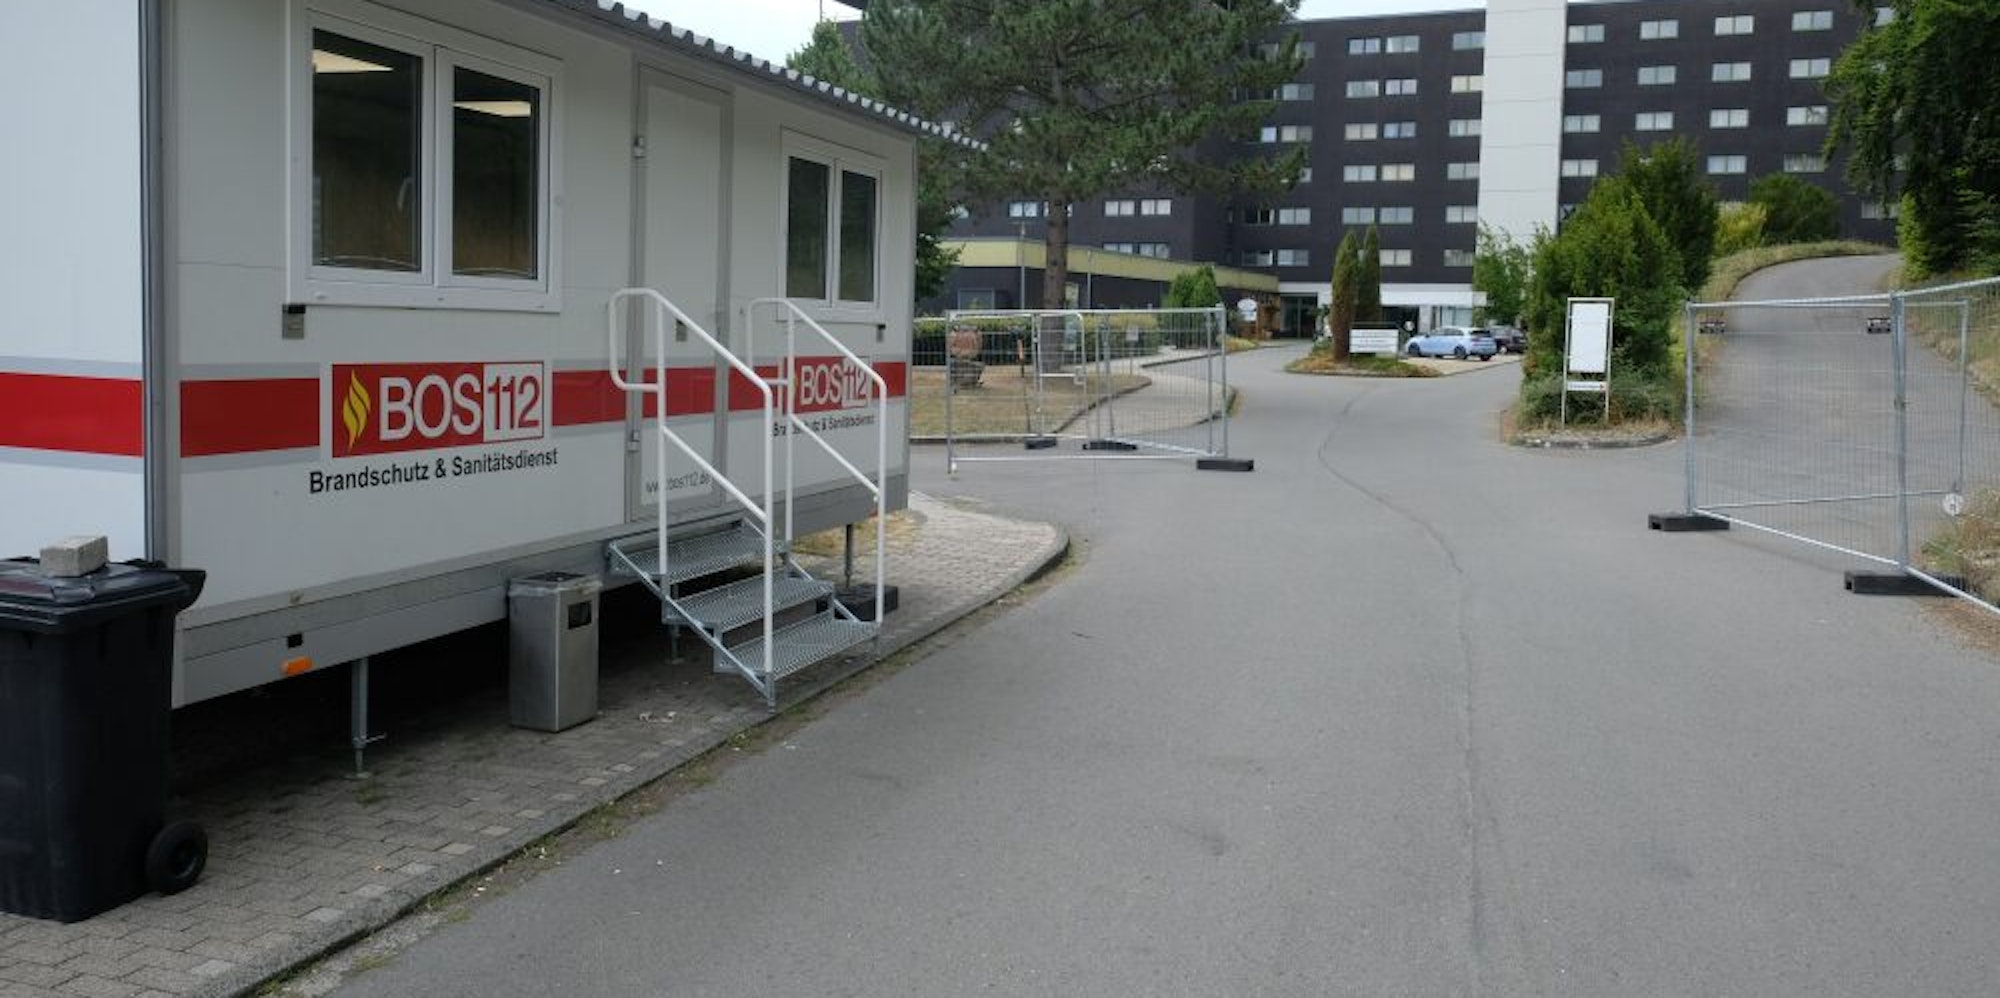 Das Unternehmen BOS 112 hat in die ehemalige Eifelhöhen-Klinik nach eigenen Angaben bereits investiert.